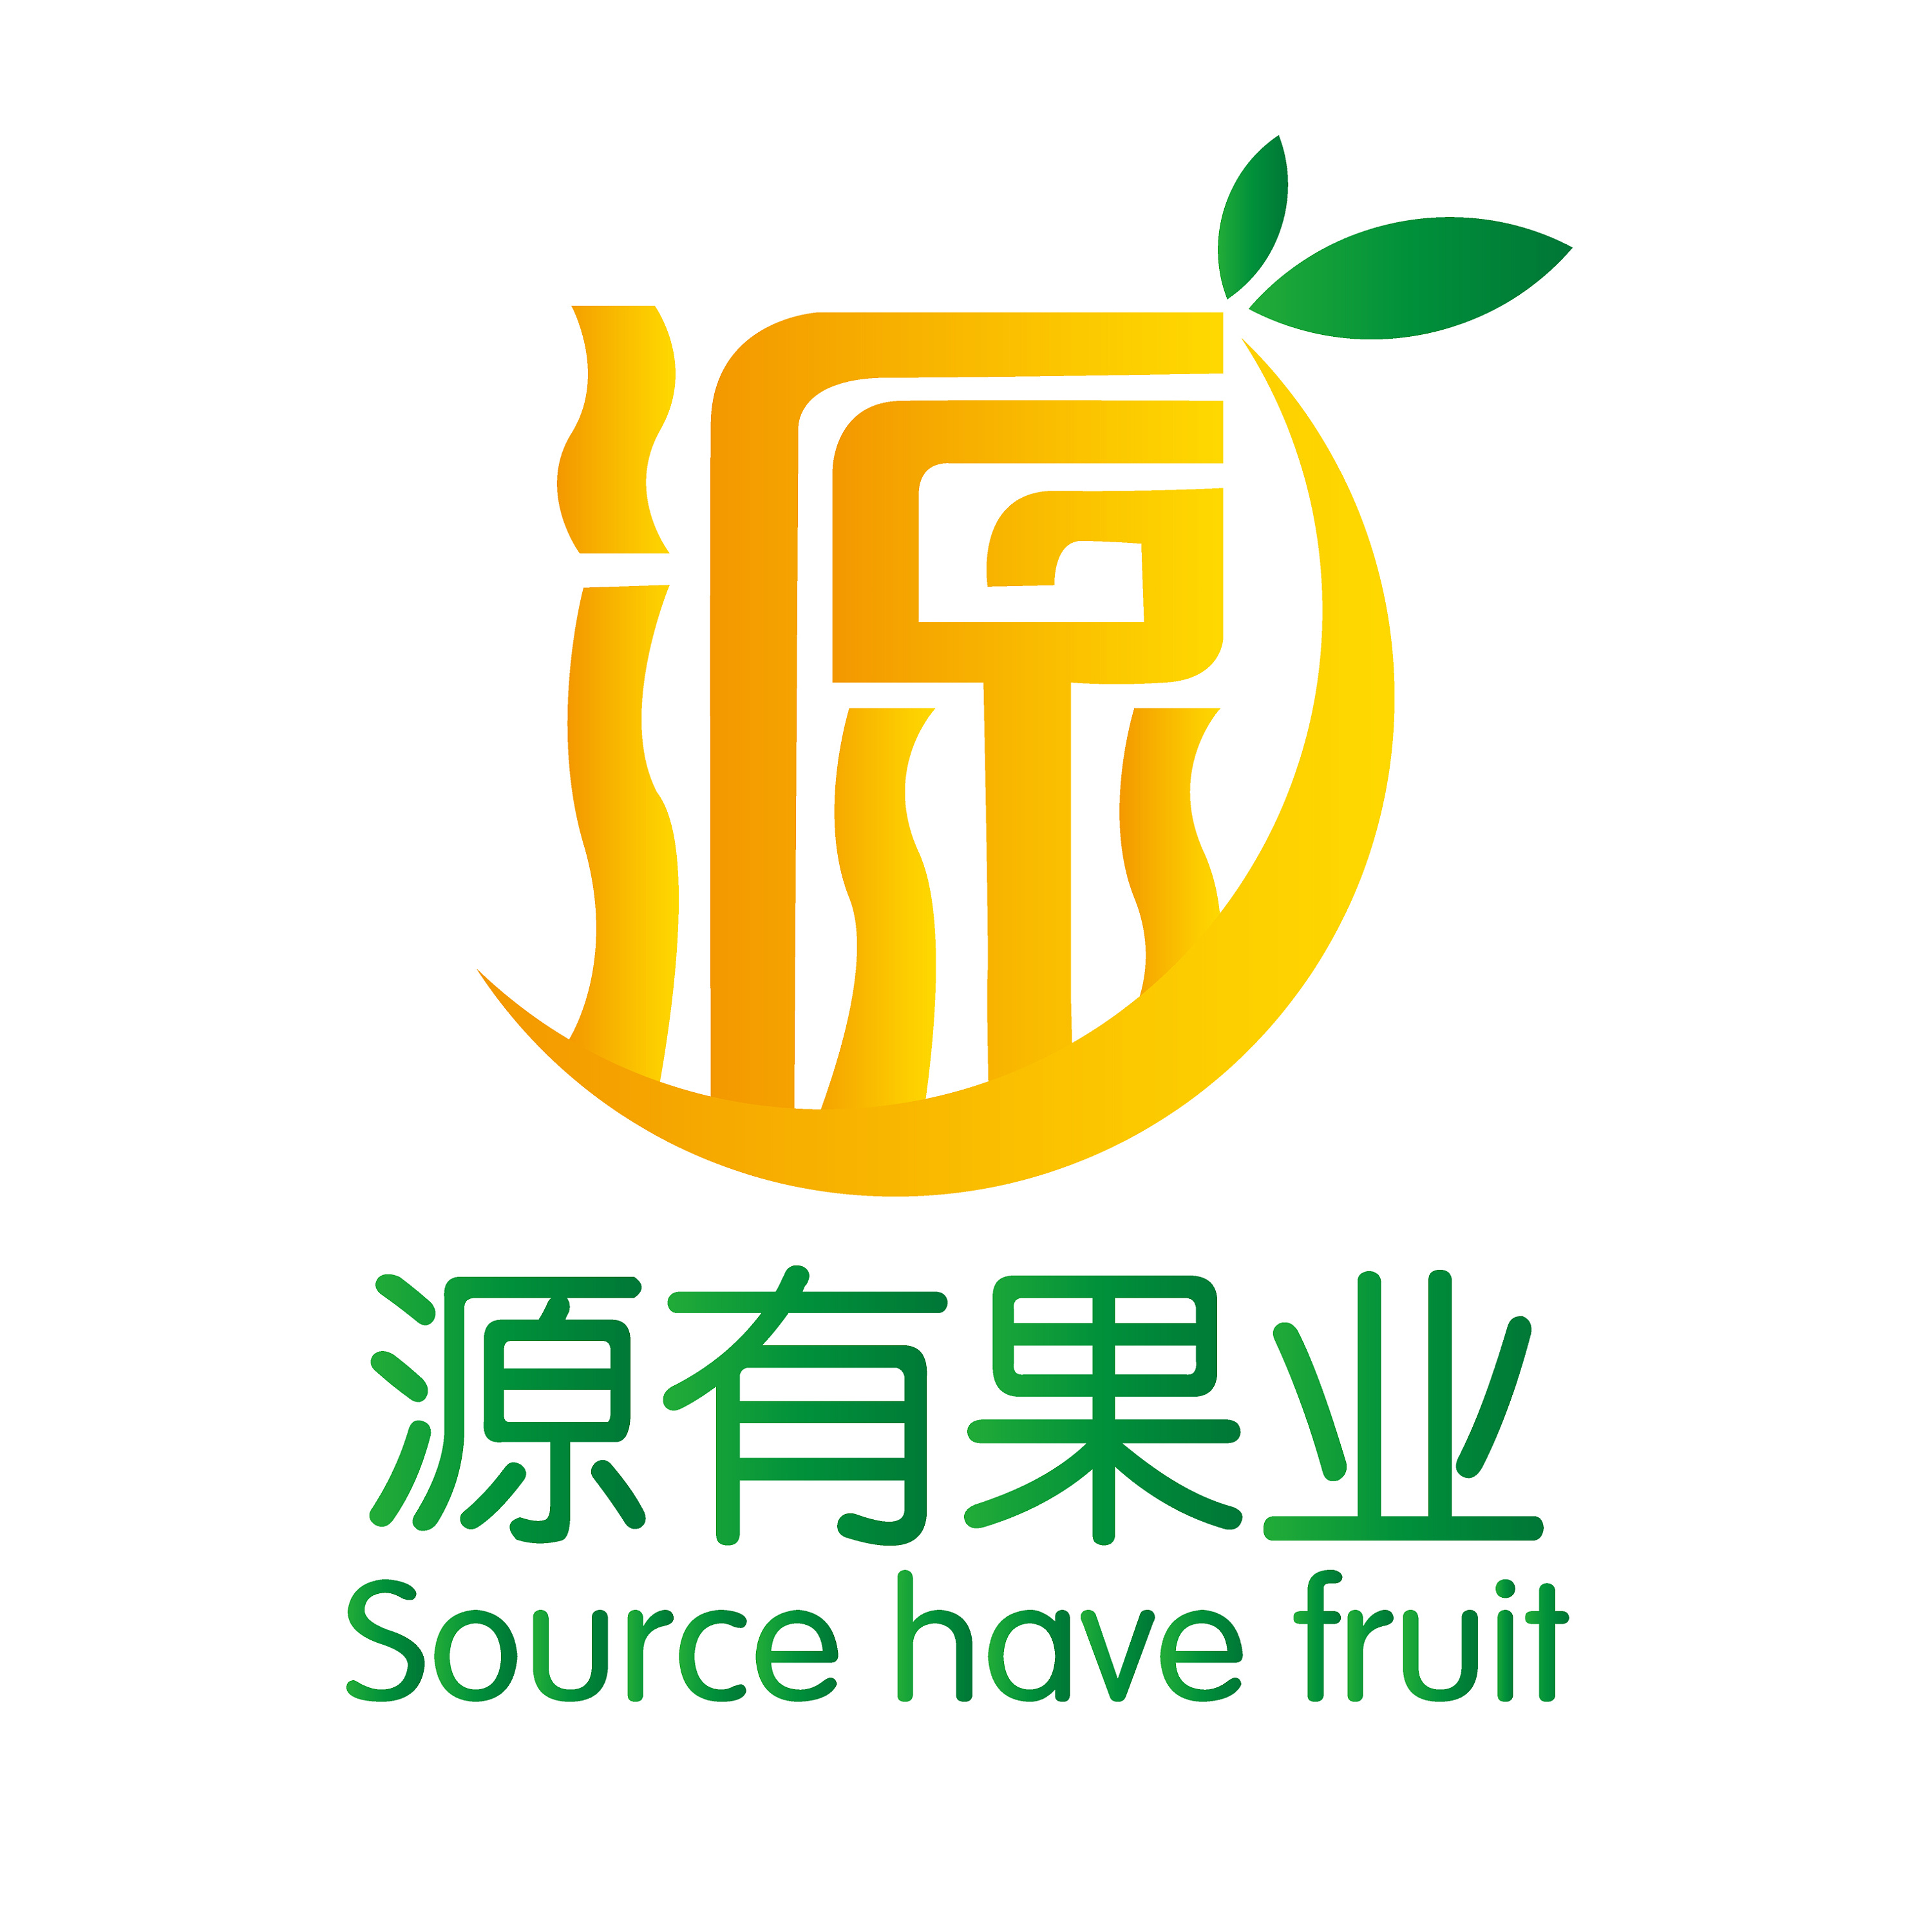 【原创】源有果业logo设计